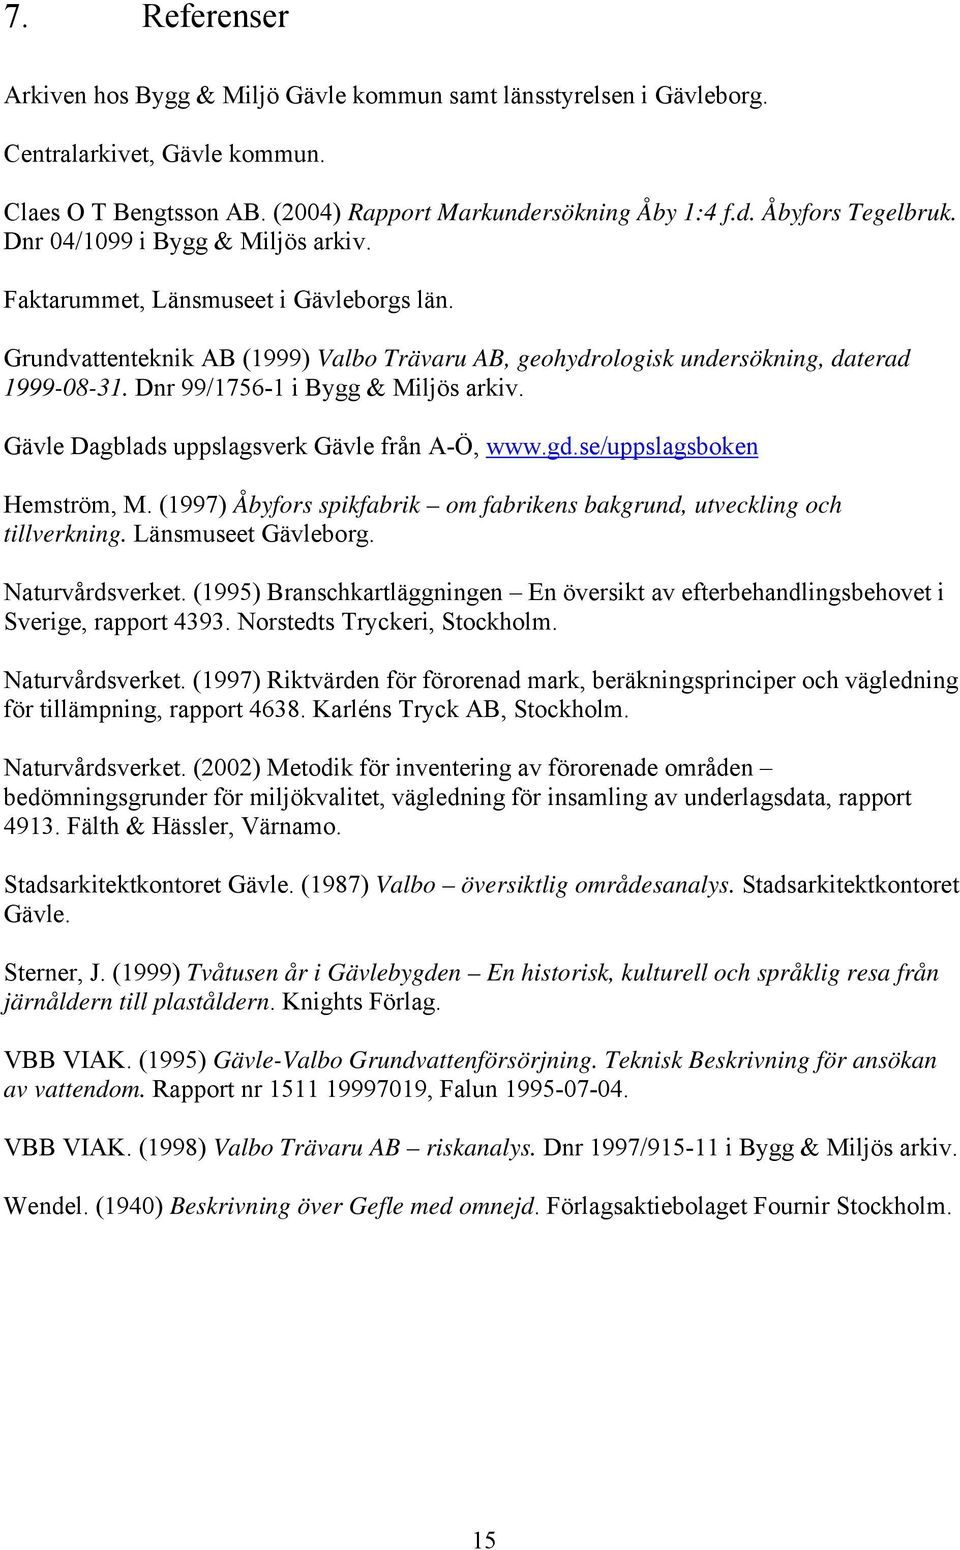 Dnr 99/1756-1 i Bygg & Miljös arkiv. Gävle Dagblads uppslagsverk Gävle från A-Ö, www.gd.se/uppslagsboken Hemström, M. (1997) Åbyfors spikfabrik om fabrikens bakgrund, utveckling och tillverkning.